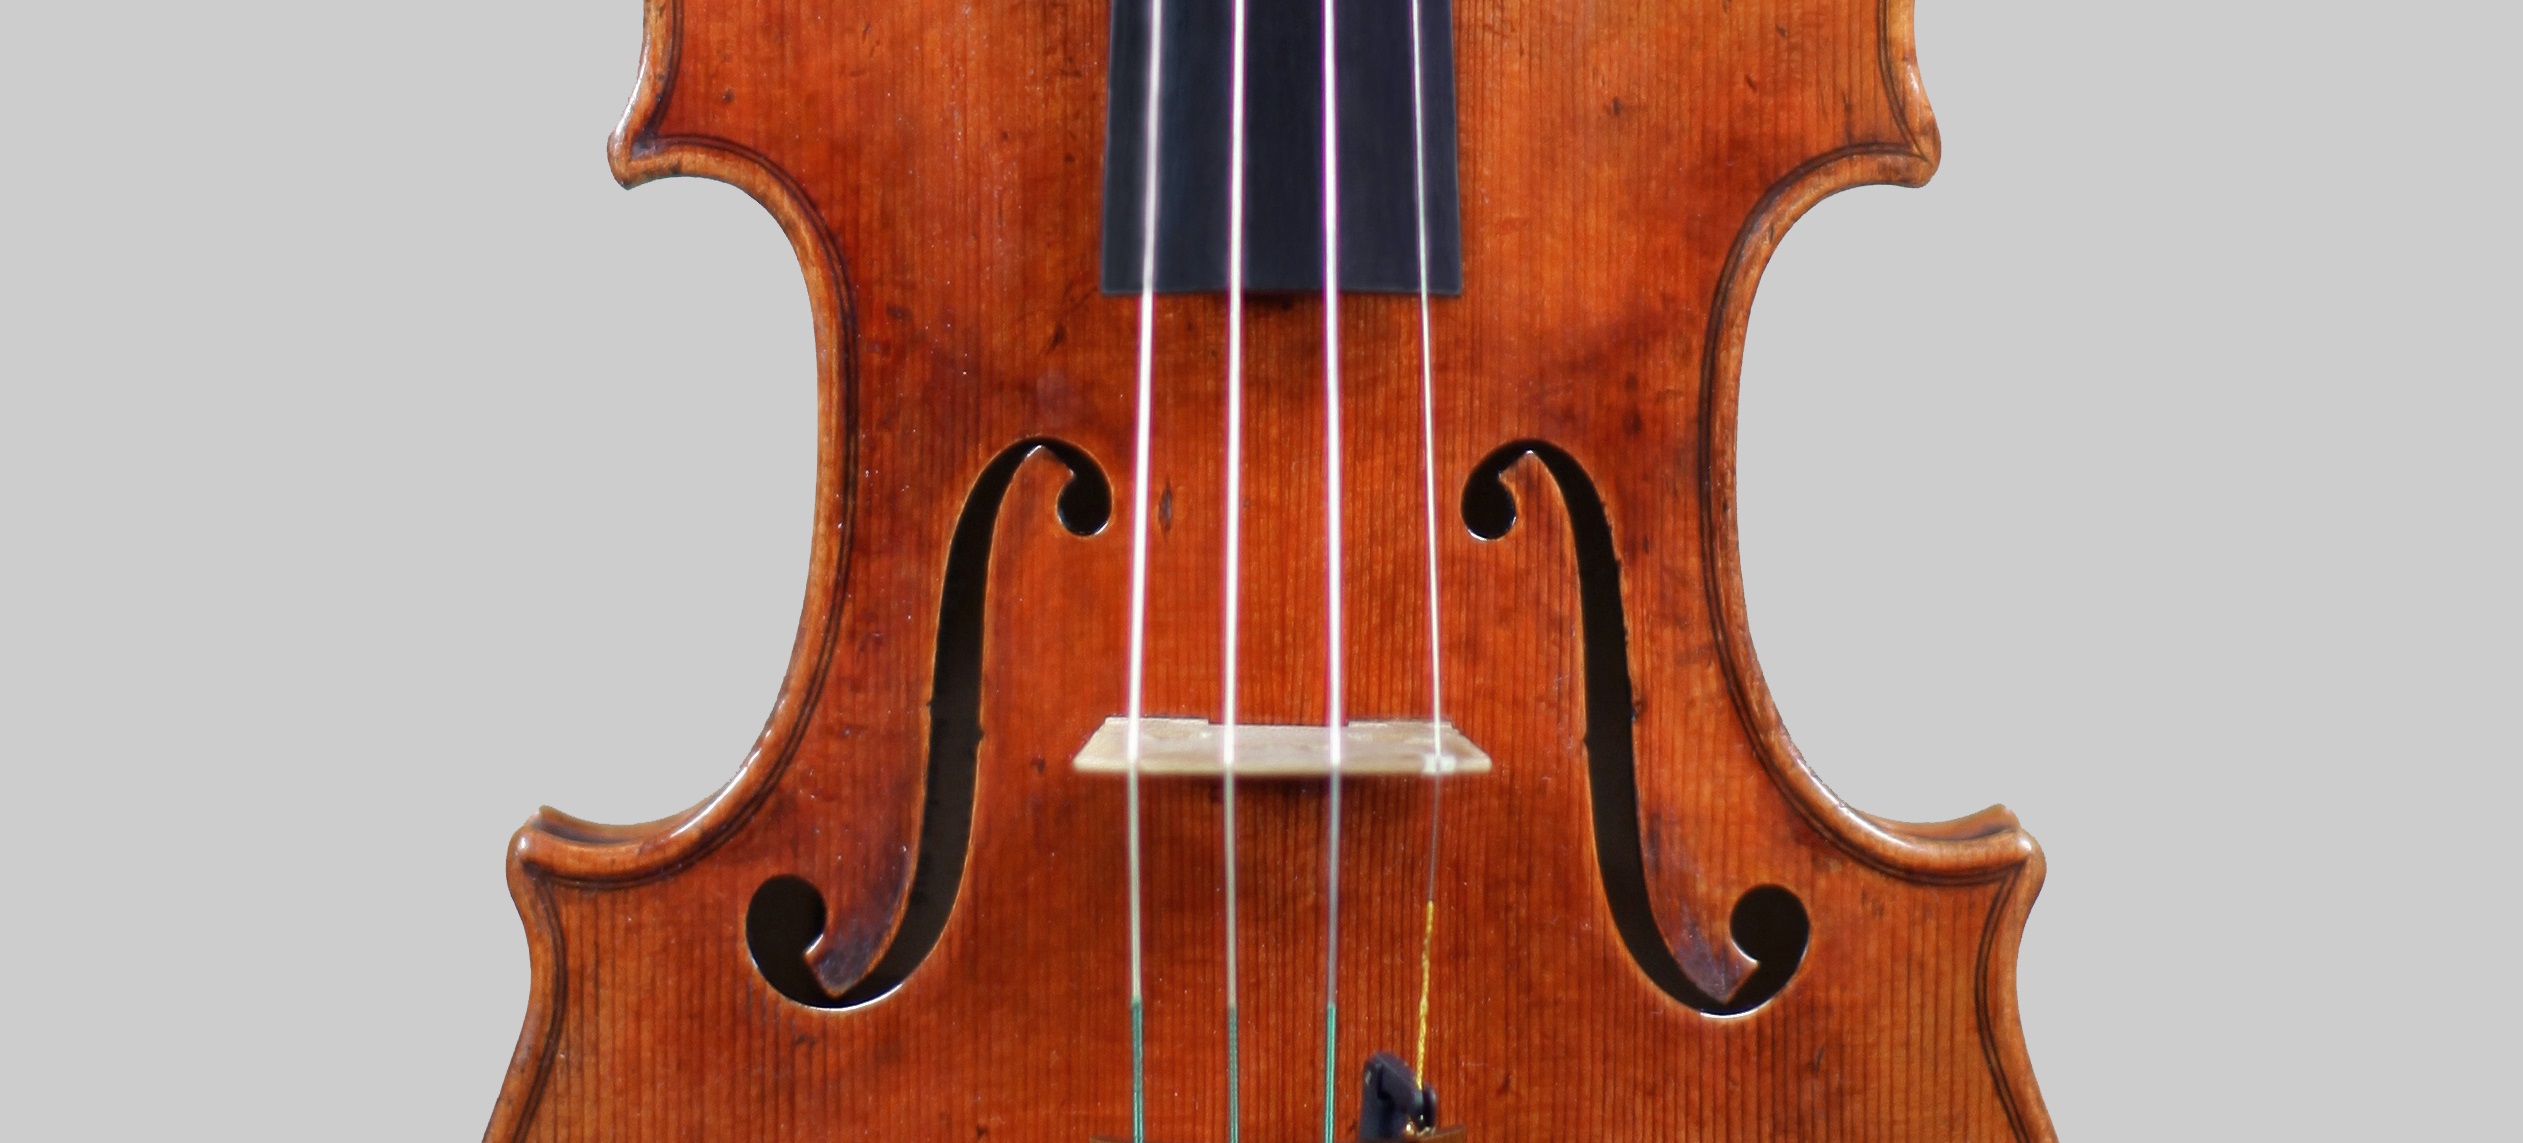 *Valerio Ferron, Italy - Cremona 2016, Model; Antonio Stradivari 1714 "Soil"　 このストラディヴァリウス・モデルは、世界的なヴァイオリン奏者Itzhak Perlman（イツァーク・パールマン）氏が所有する1714年の名器" […]